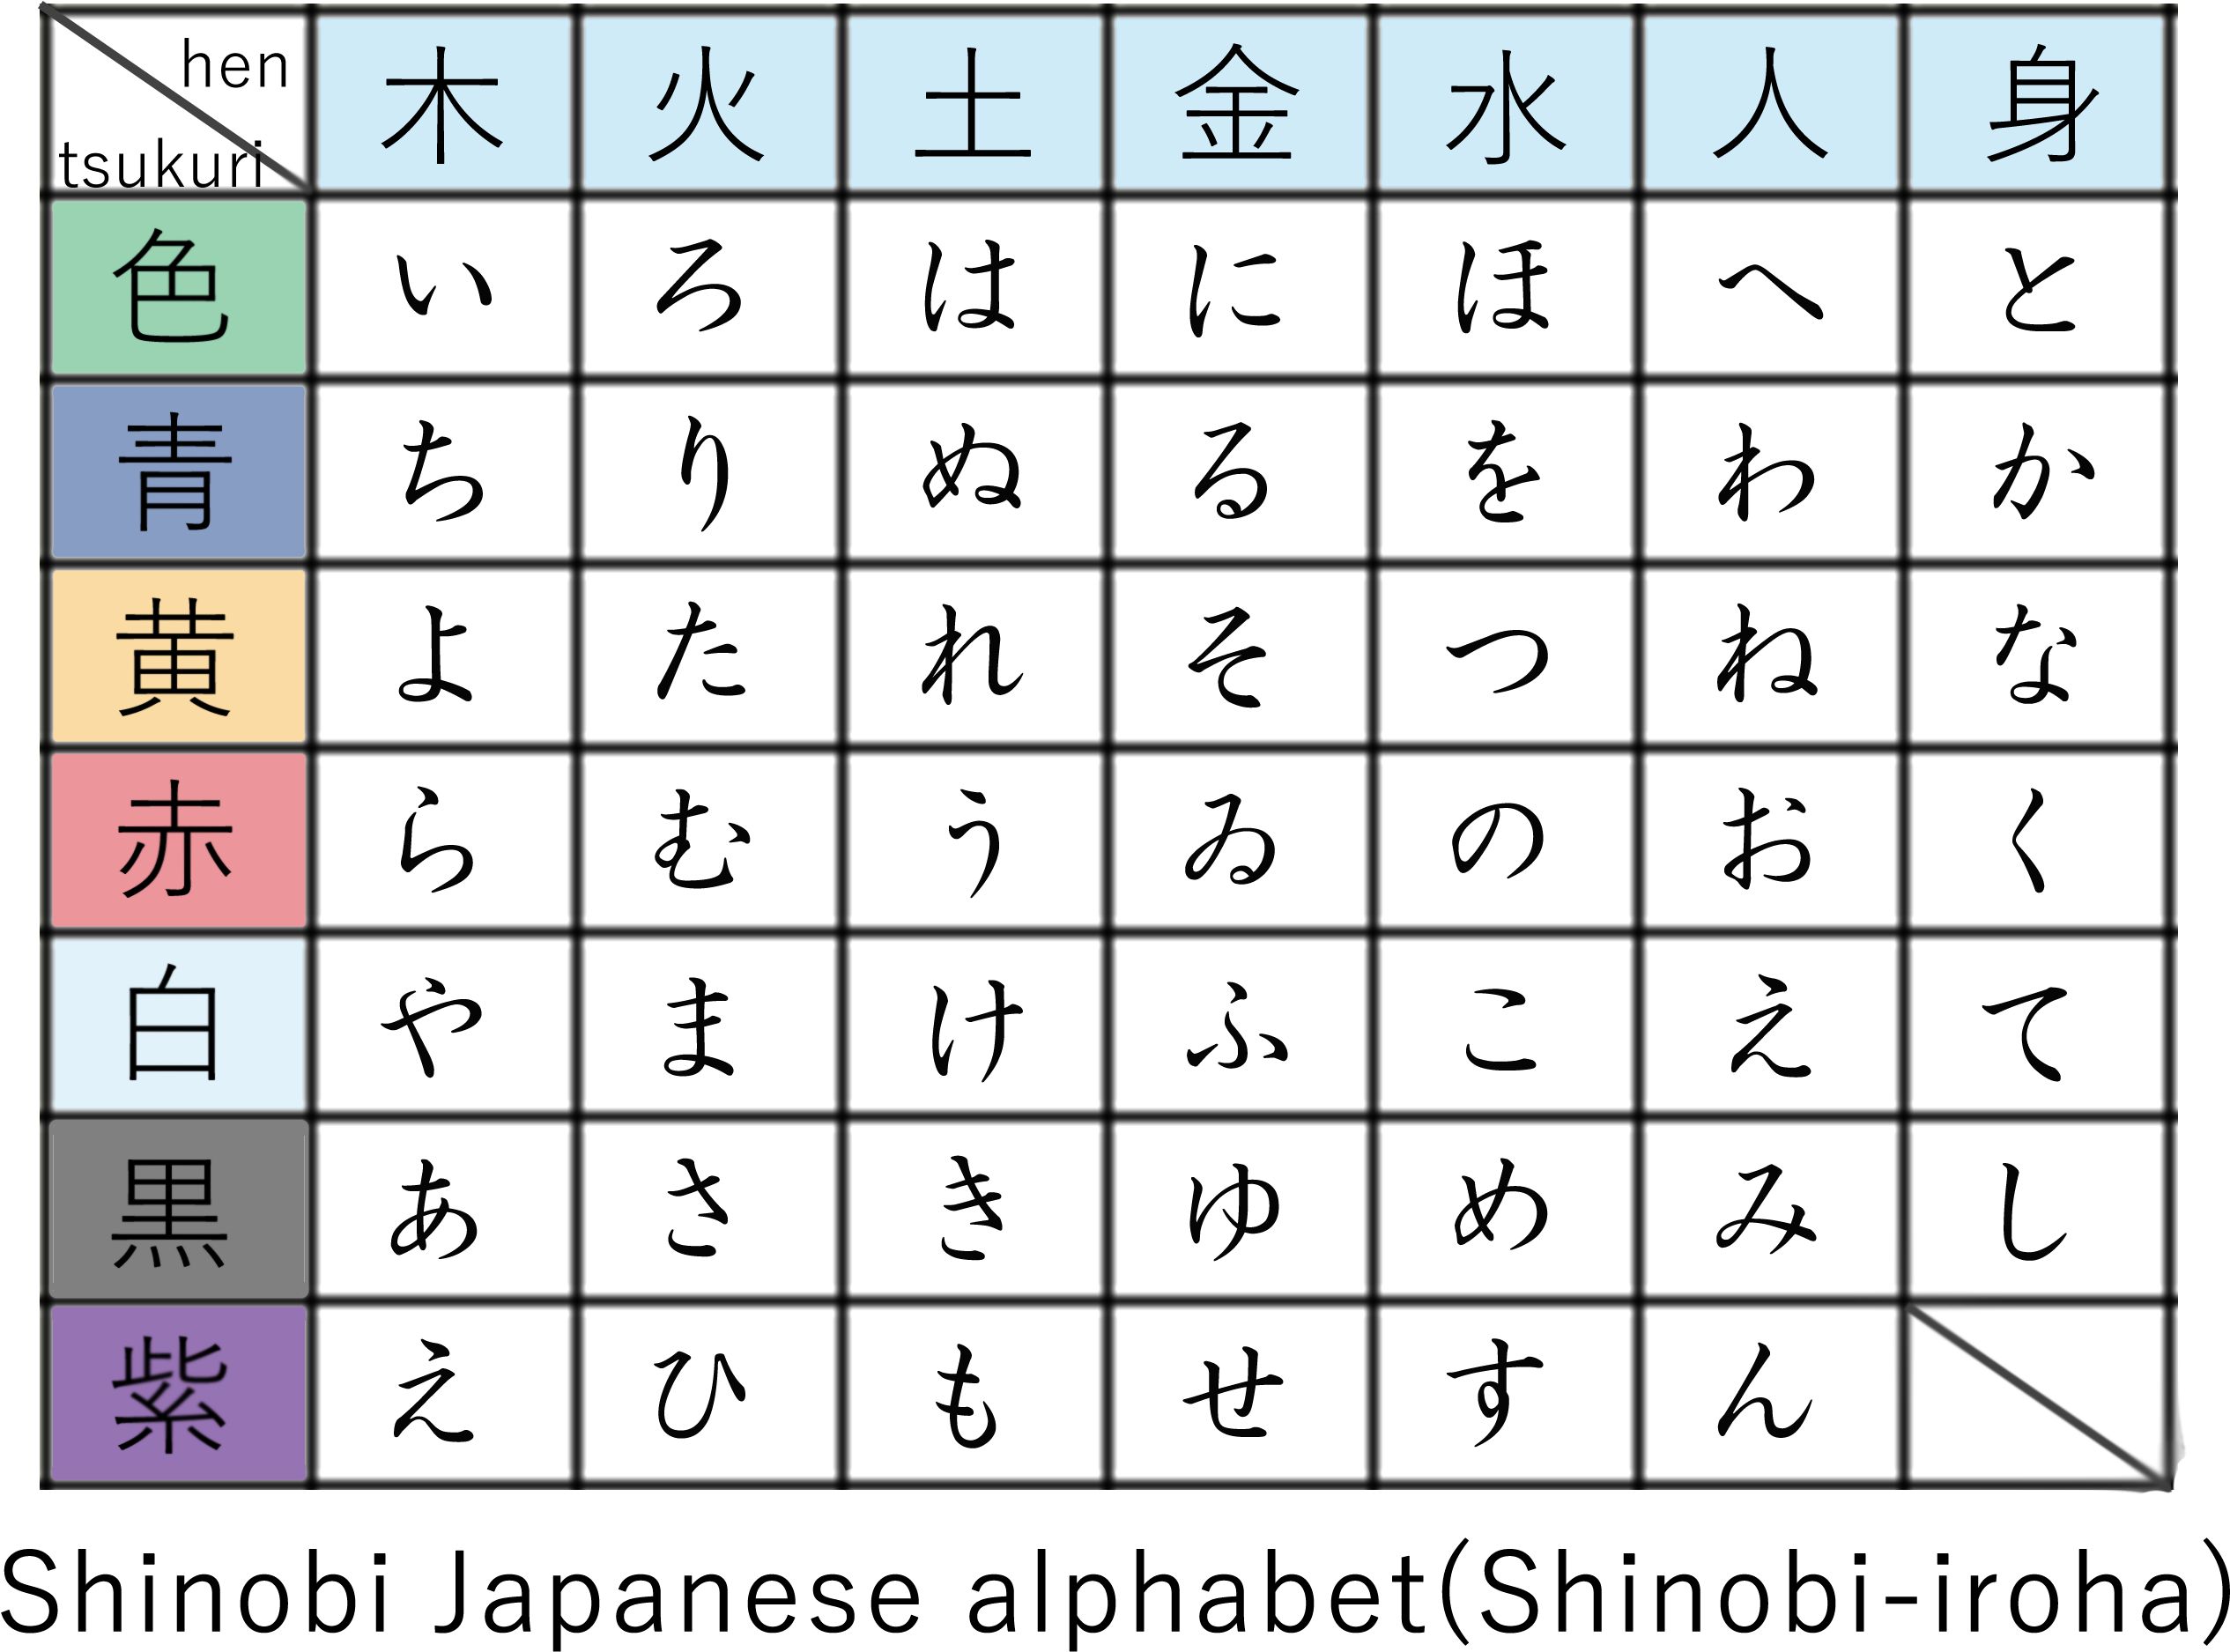 Фото японского алфавита